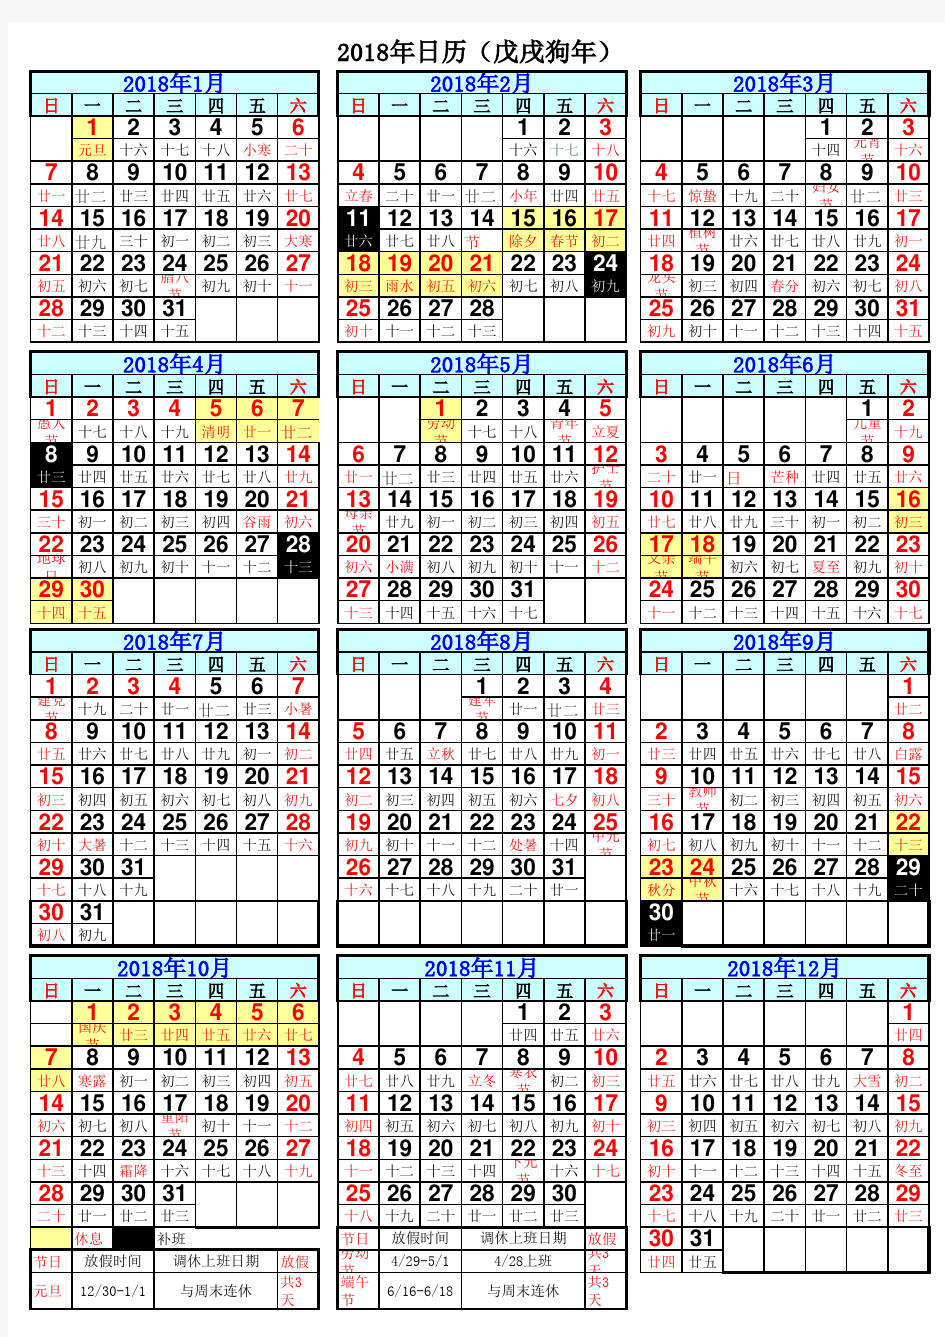 2018年日历表(含放假安排)